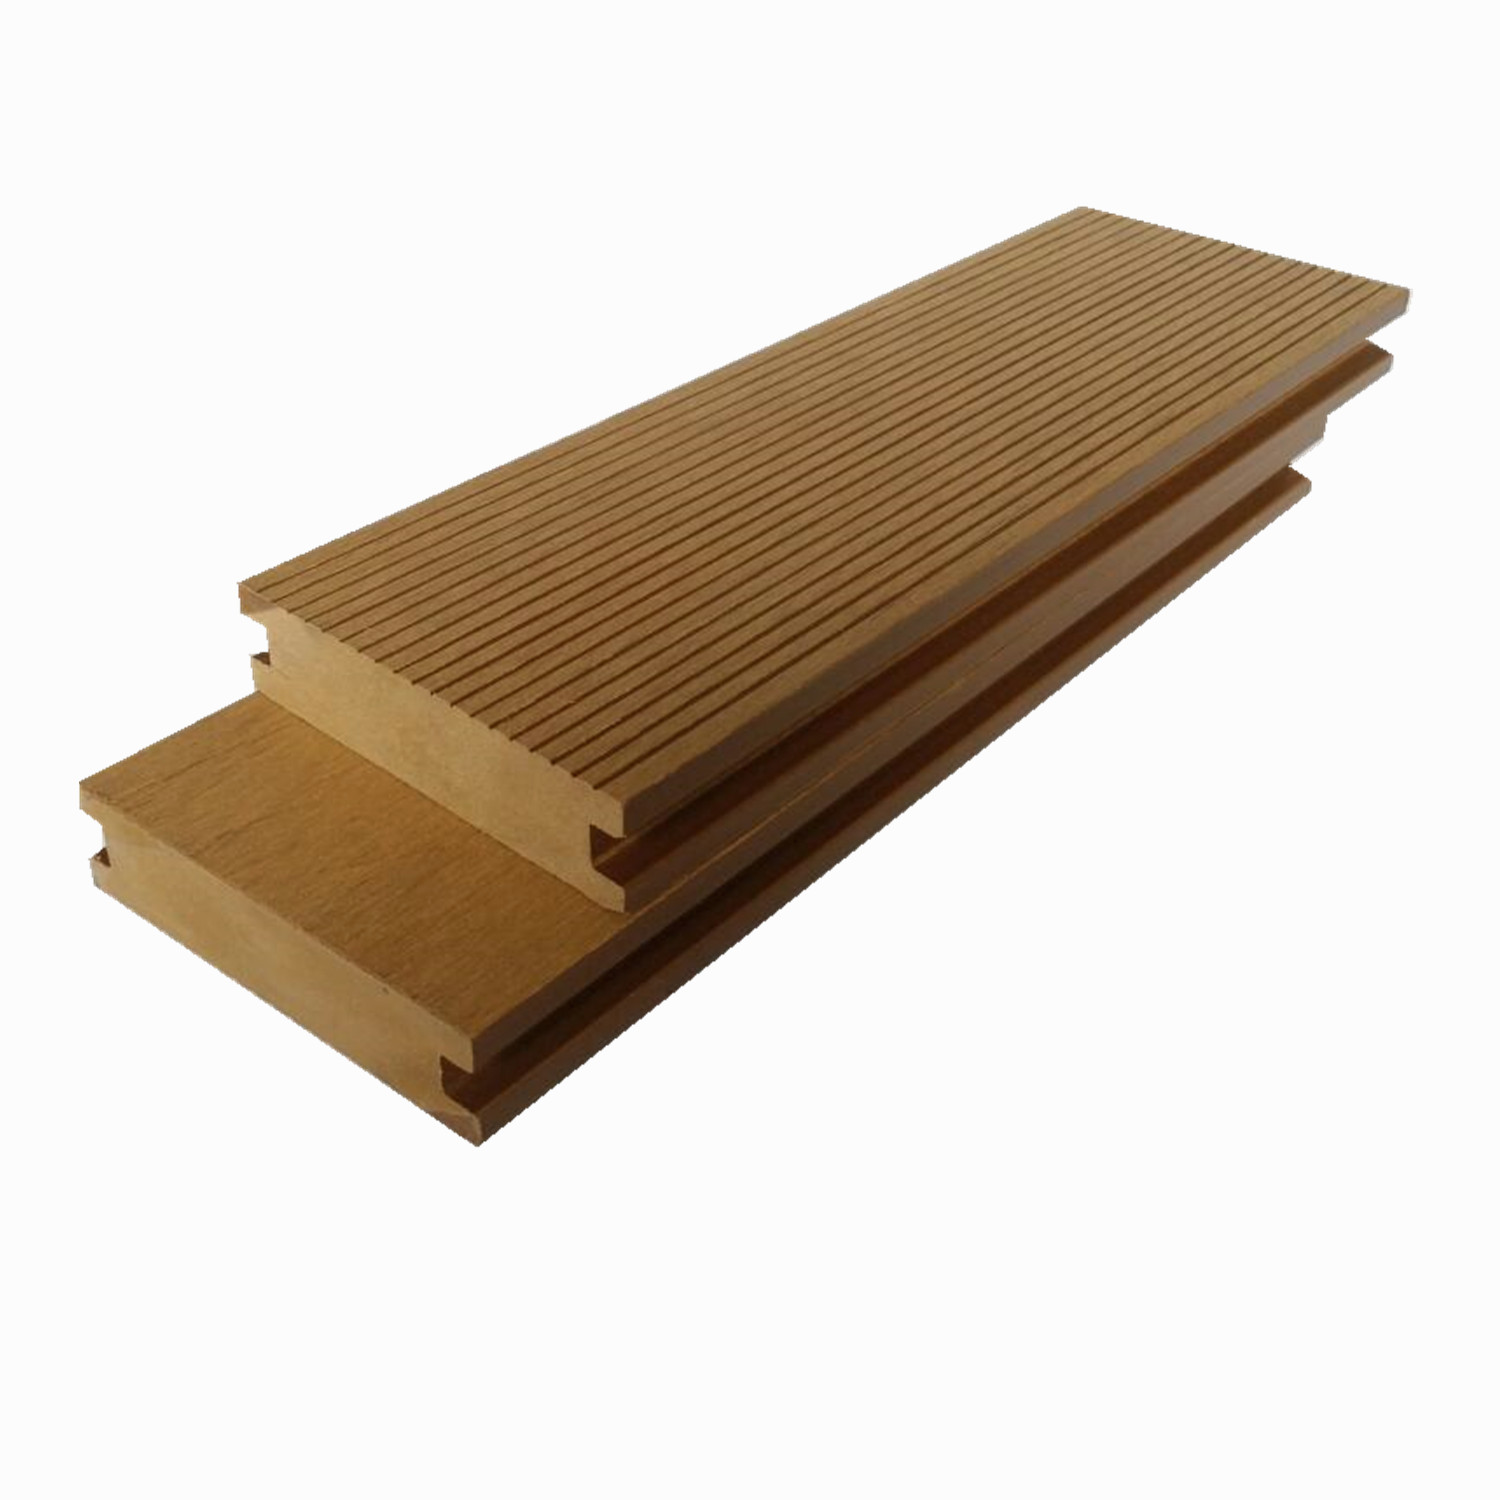  Solid Waterproof Wood Plastic Composite Wpc Decking Accessories Floor Joist Keel